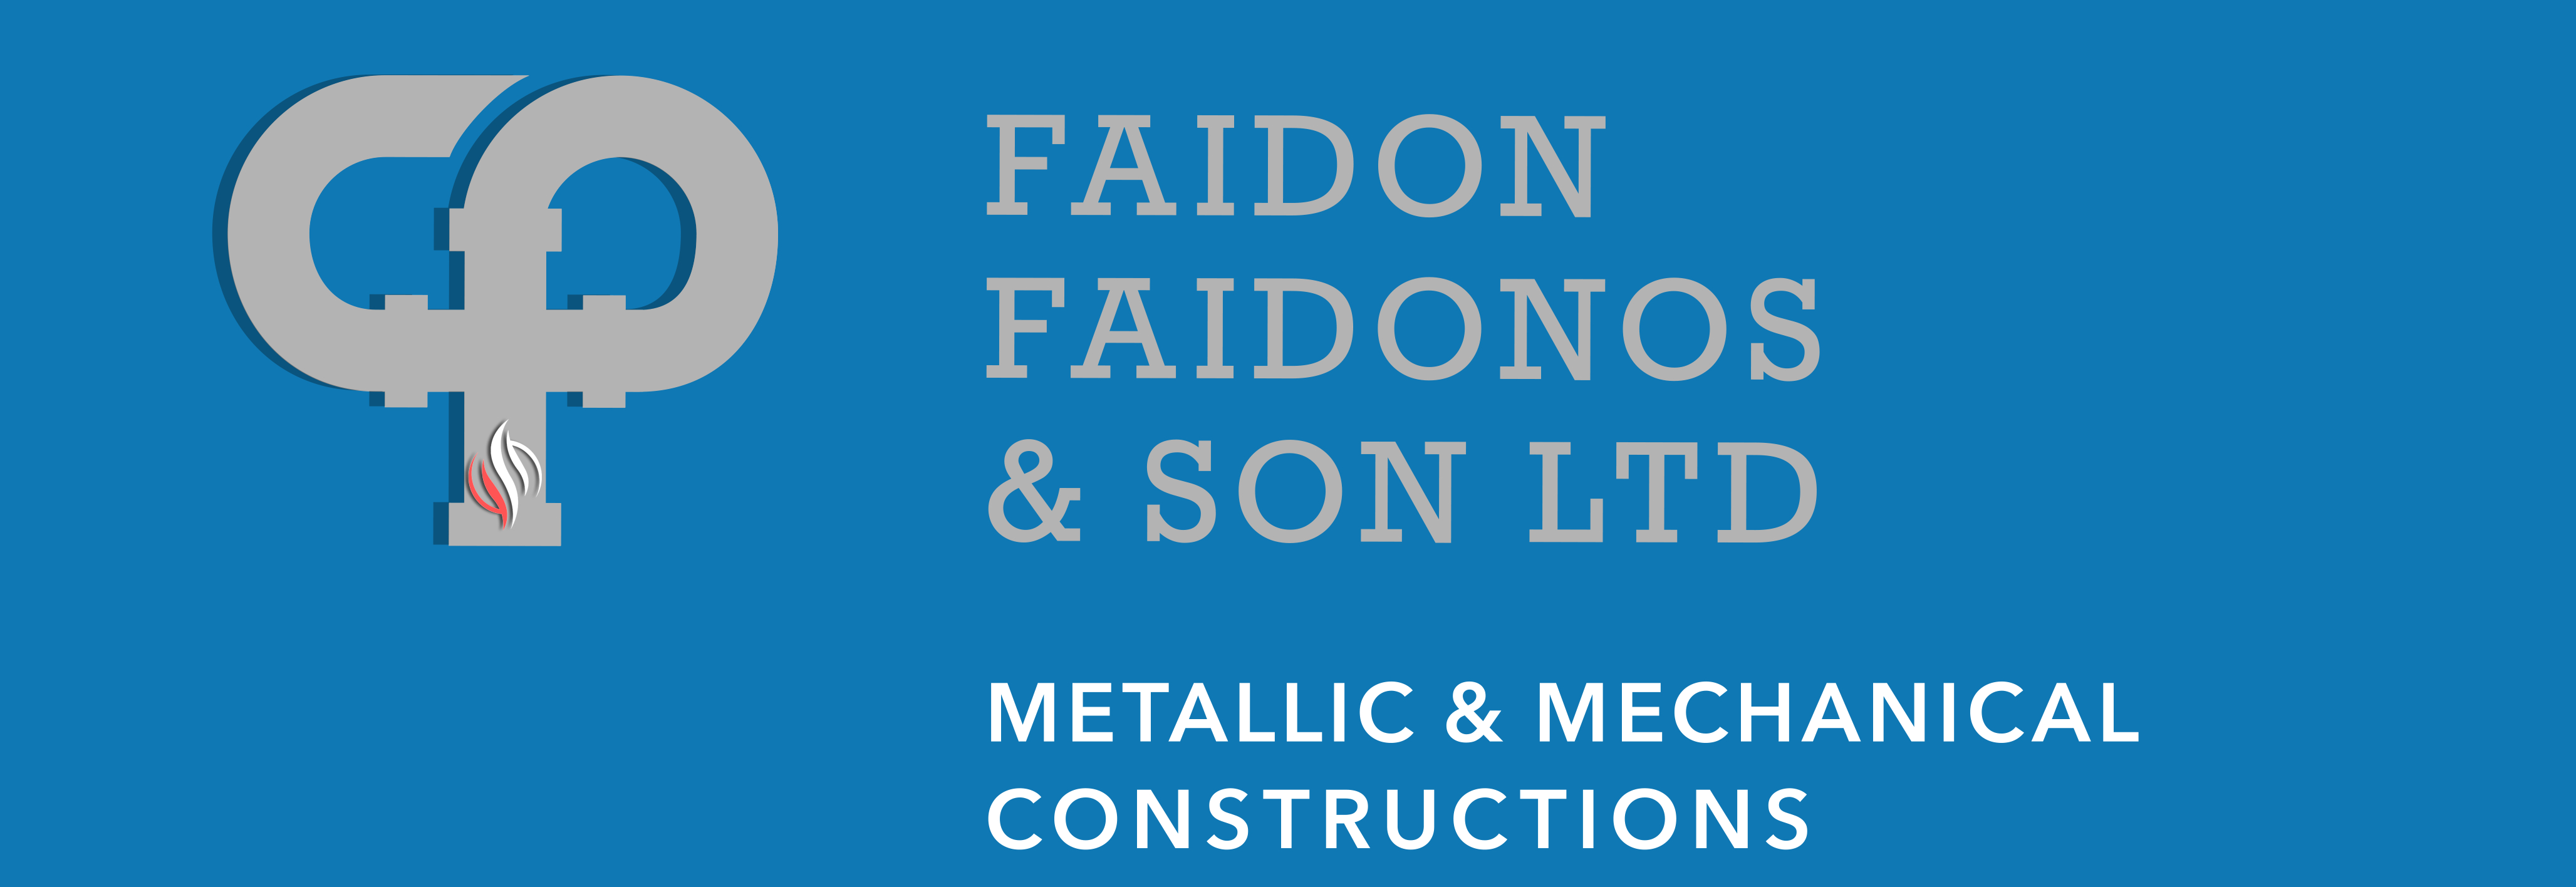 F. FAIDONOS & SON LTD